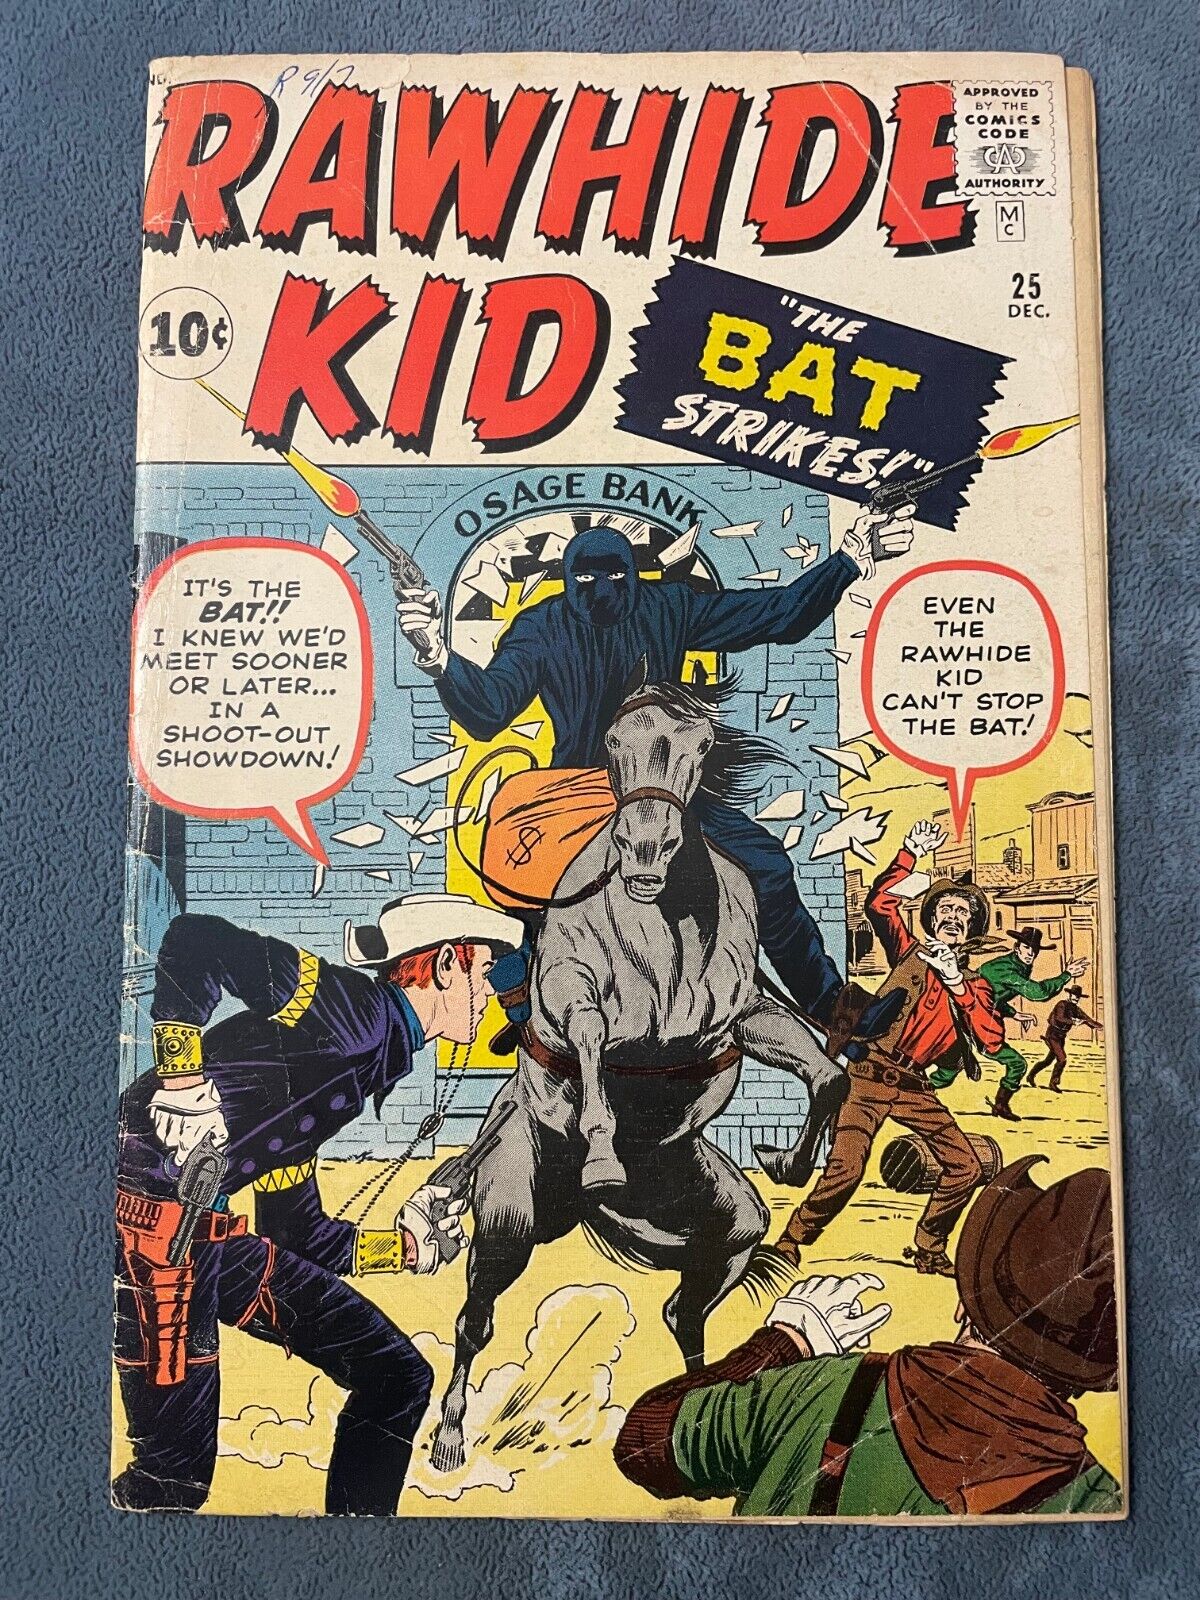 Rawhide Kid #25 1961 Atlas Marvel Comic Book Western Jack Kirby Cover GD+